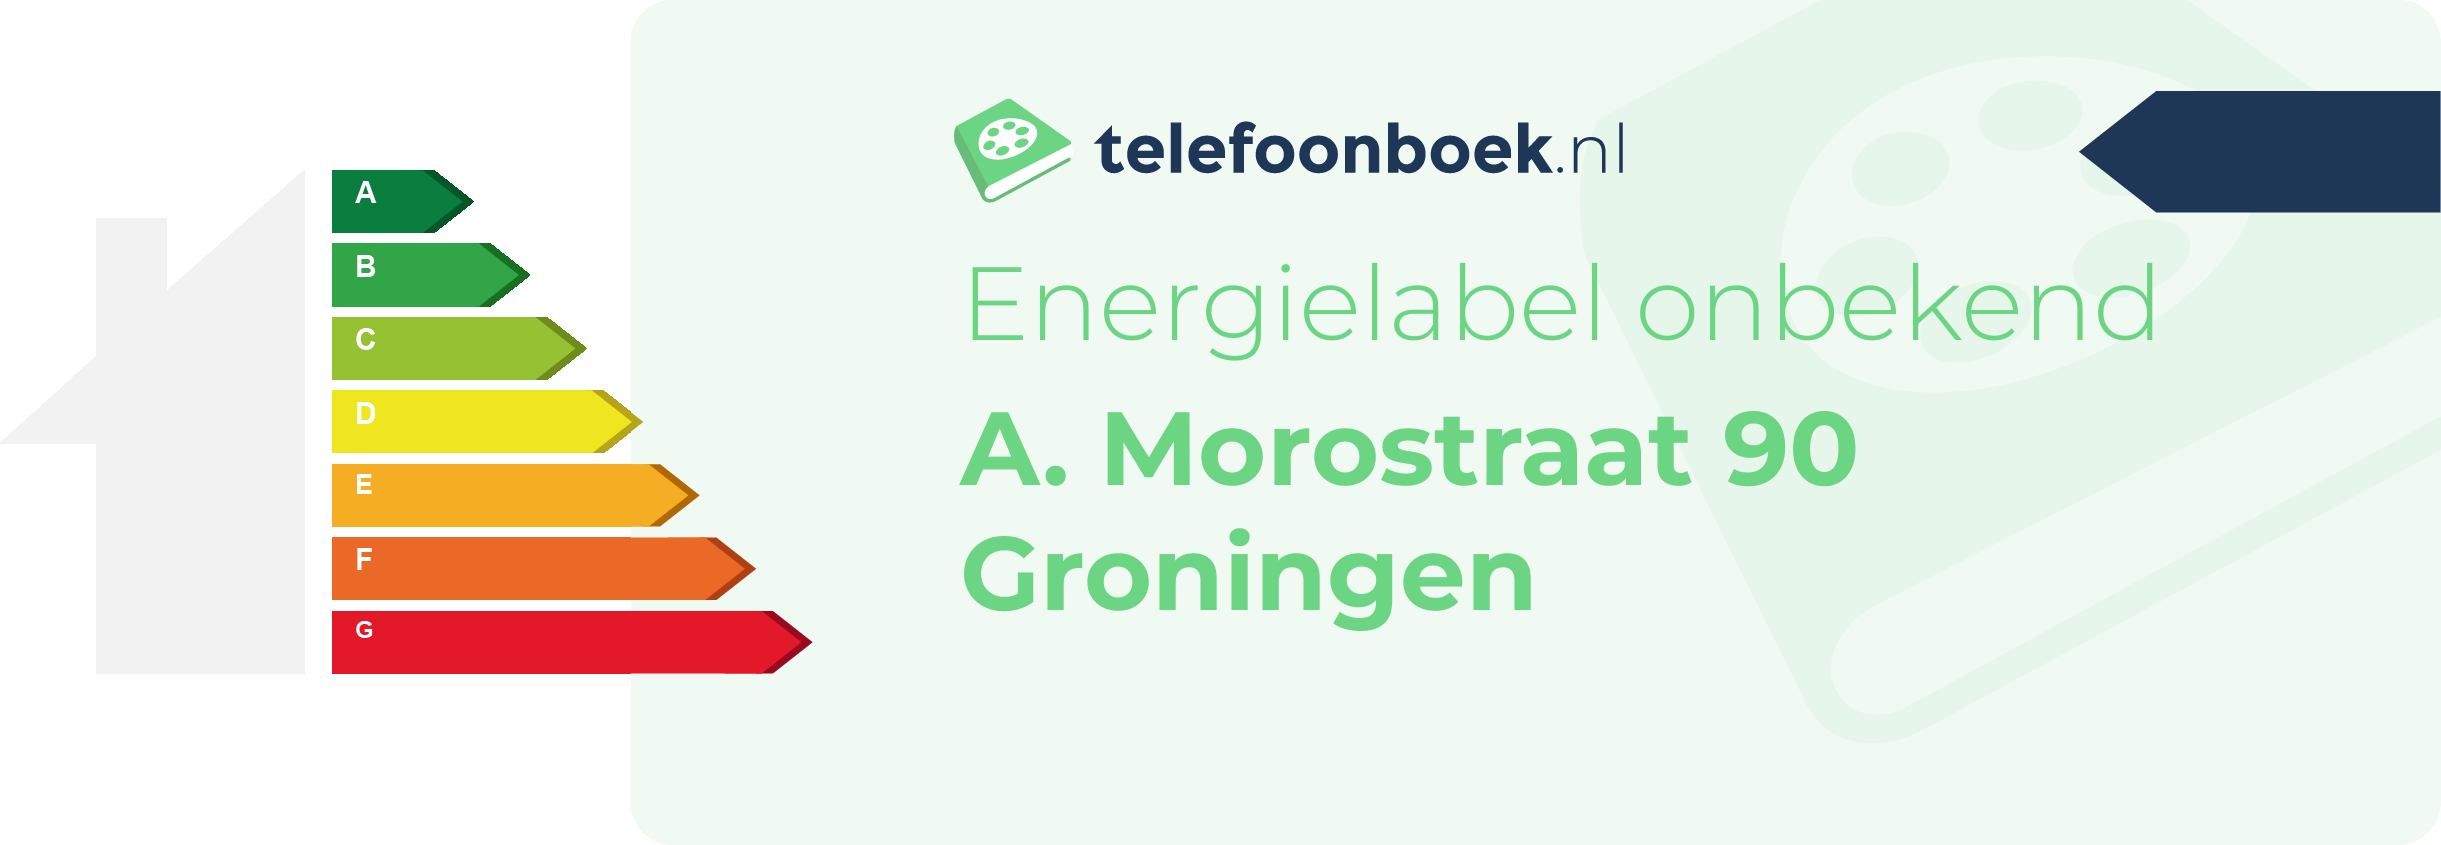 Energielabel A. Morostraat 90 Groningen